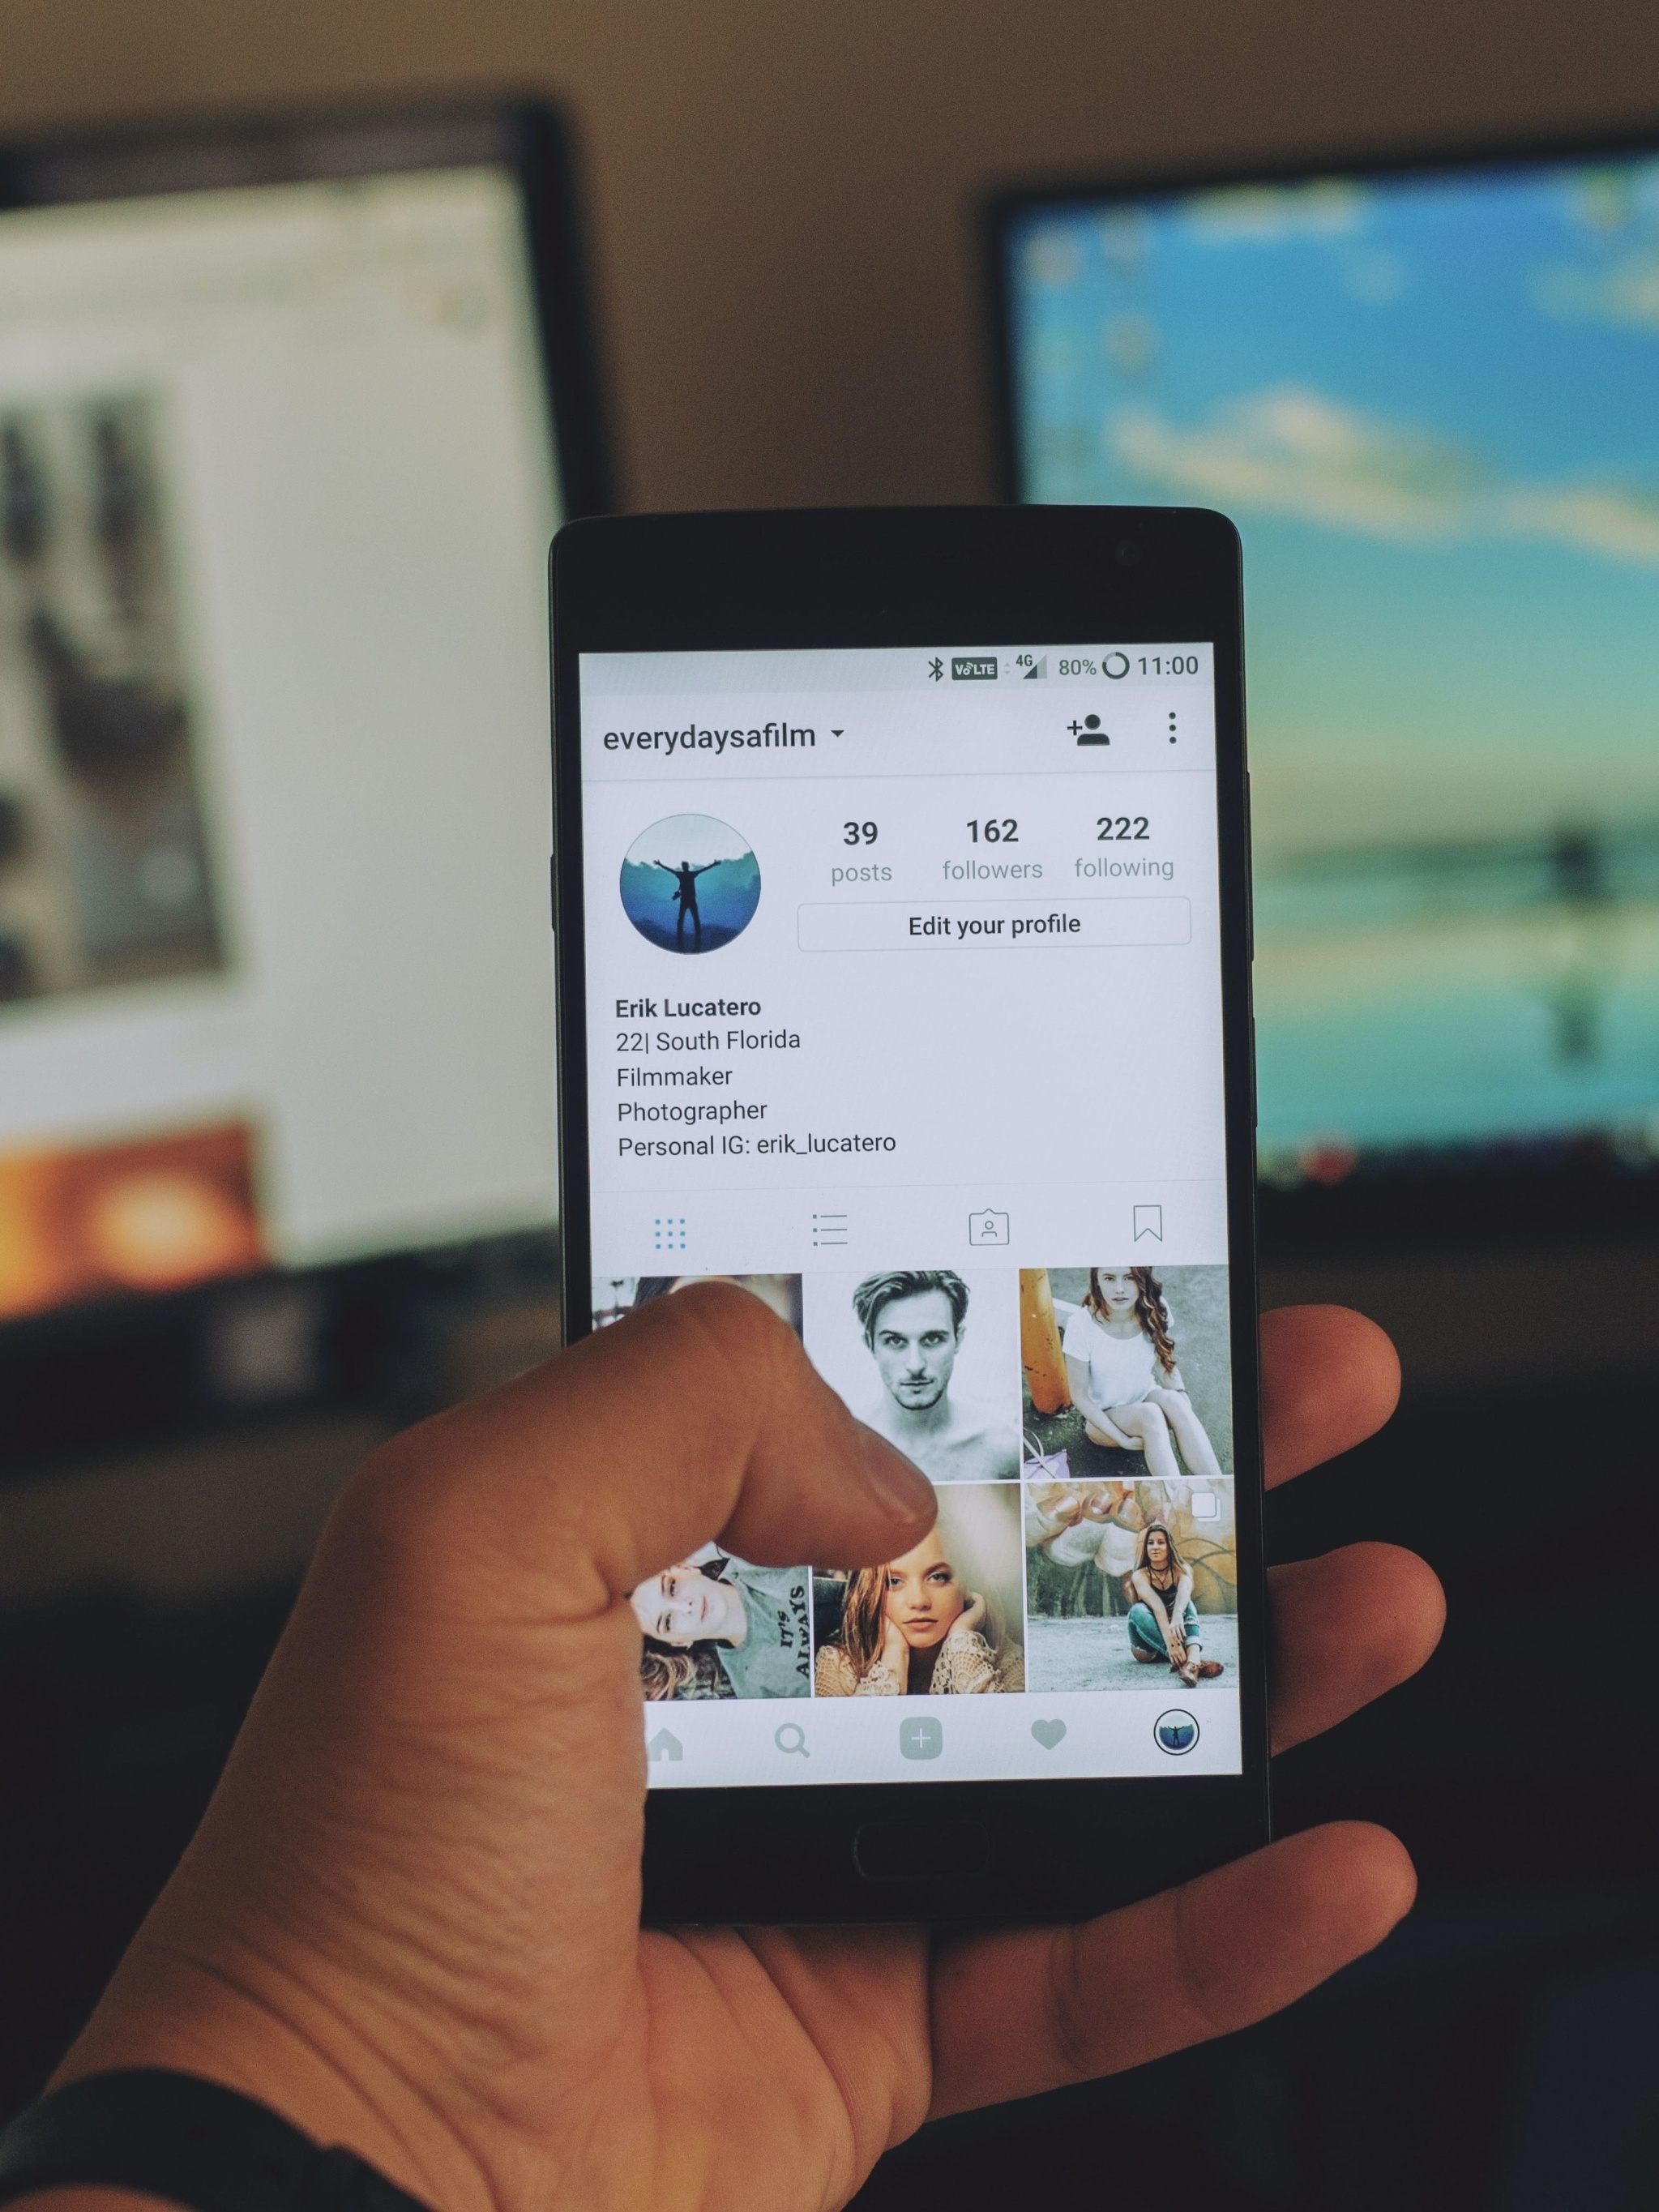 Atualização do Instagram trará botão de tradução automática